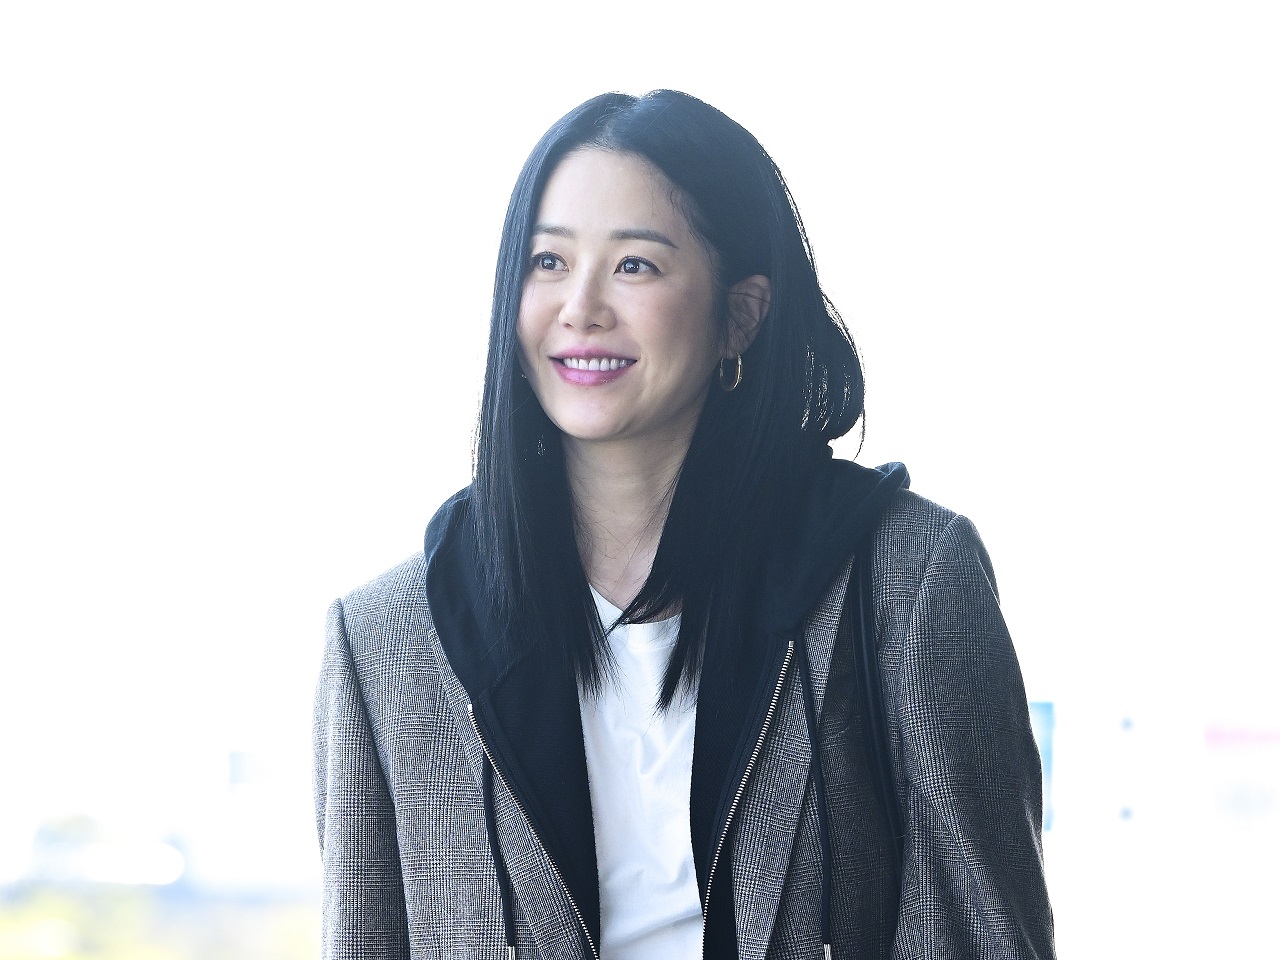 大財閥に嫁ぎ離婚した韓国の人気女優、日本での新婚生活を衝撃の初告白